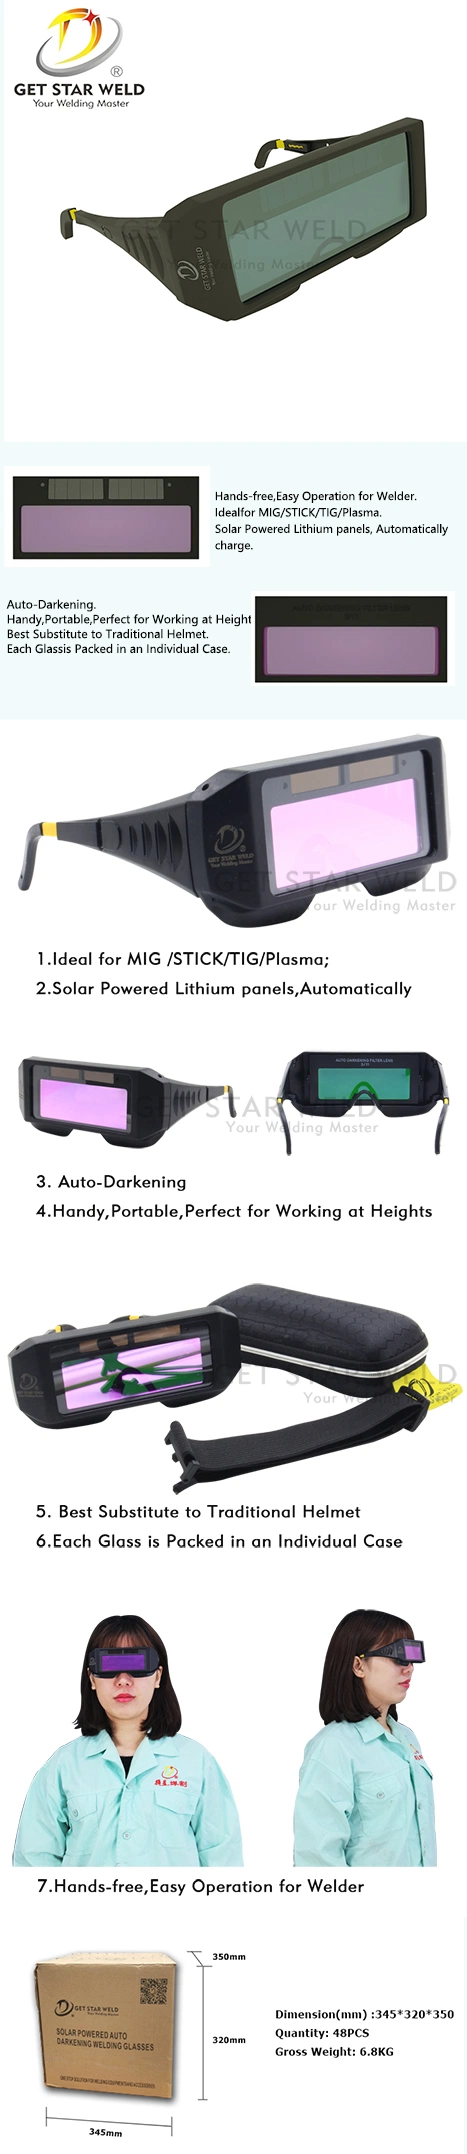 Get Star Weld Black Solar Powered Auto Darkening Welding Safety Glasses GS-3008